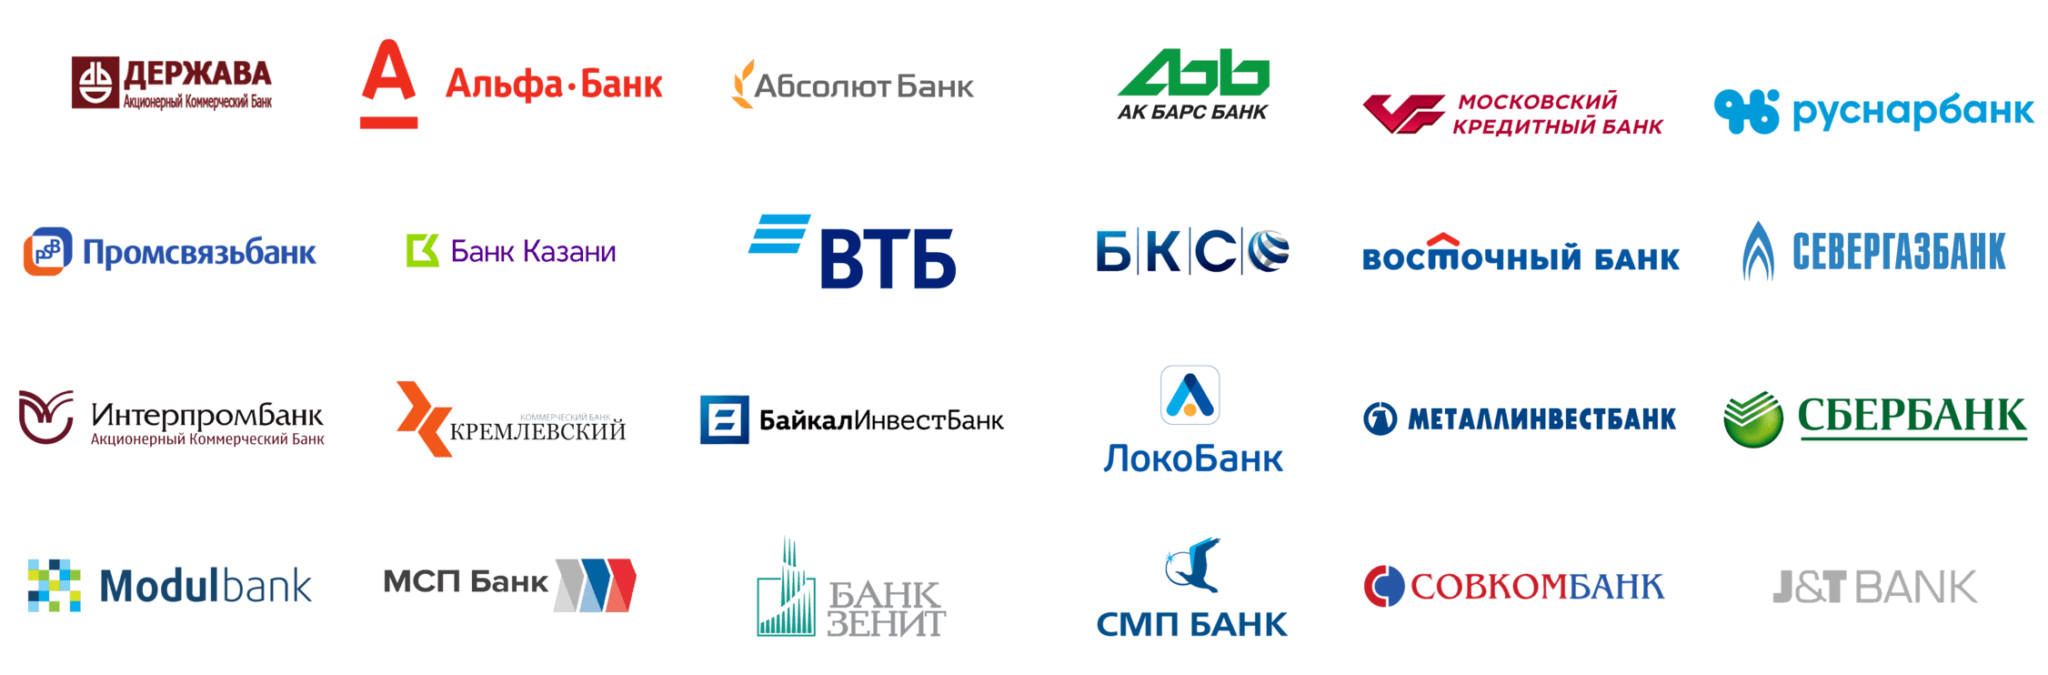 Втб банки партнеры внесение. Банки партнеры. Логотипы банков. Партнёры ВТБ банка. Банки партнеры список.